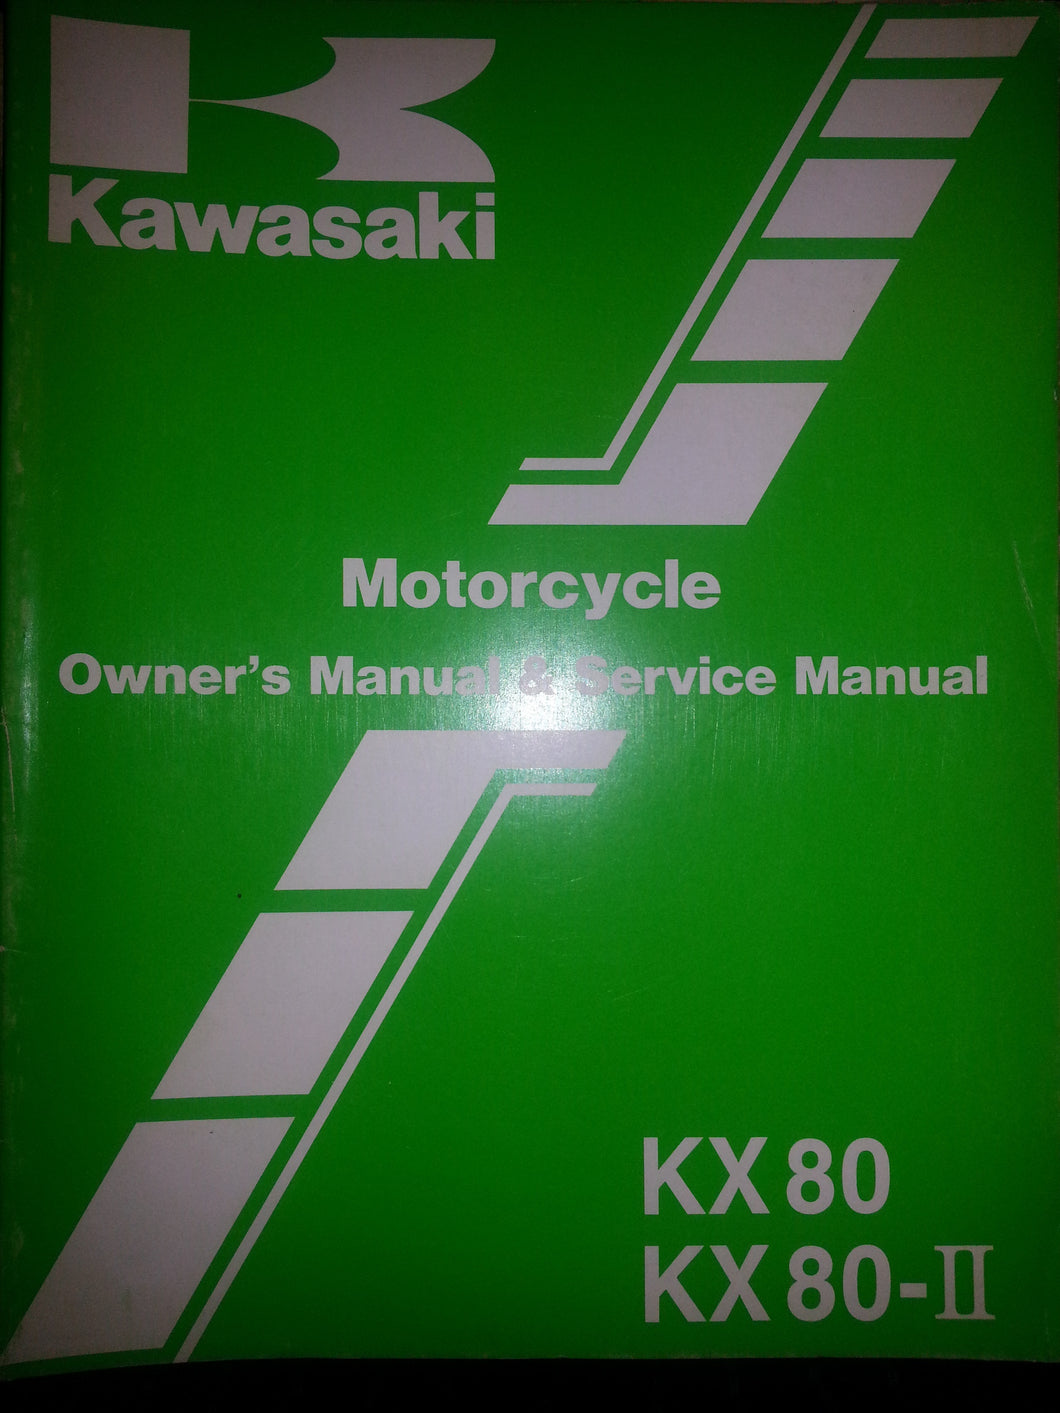 Kawasaki KX80, KX80-II